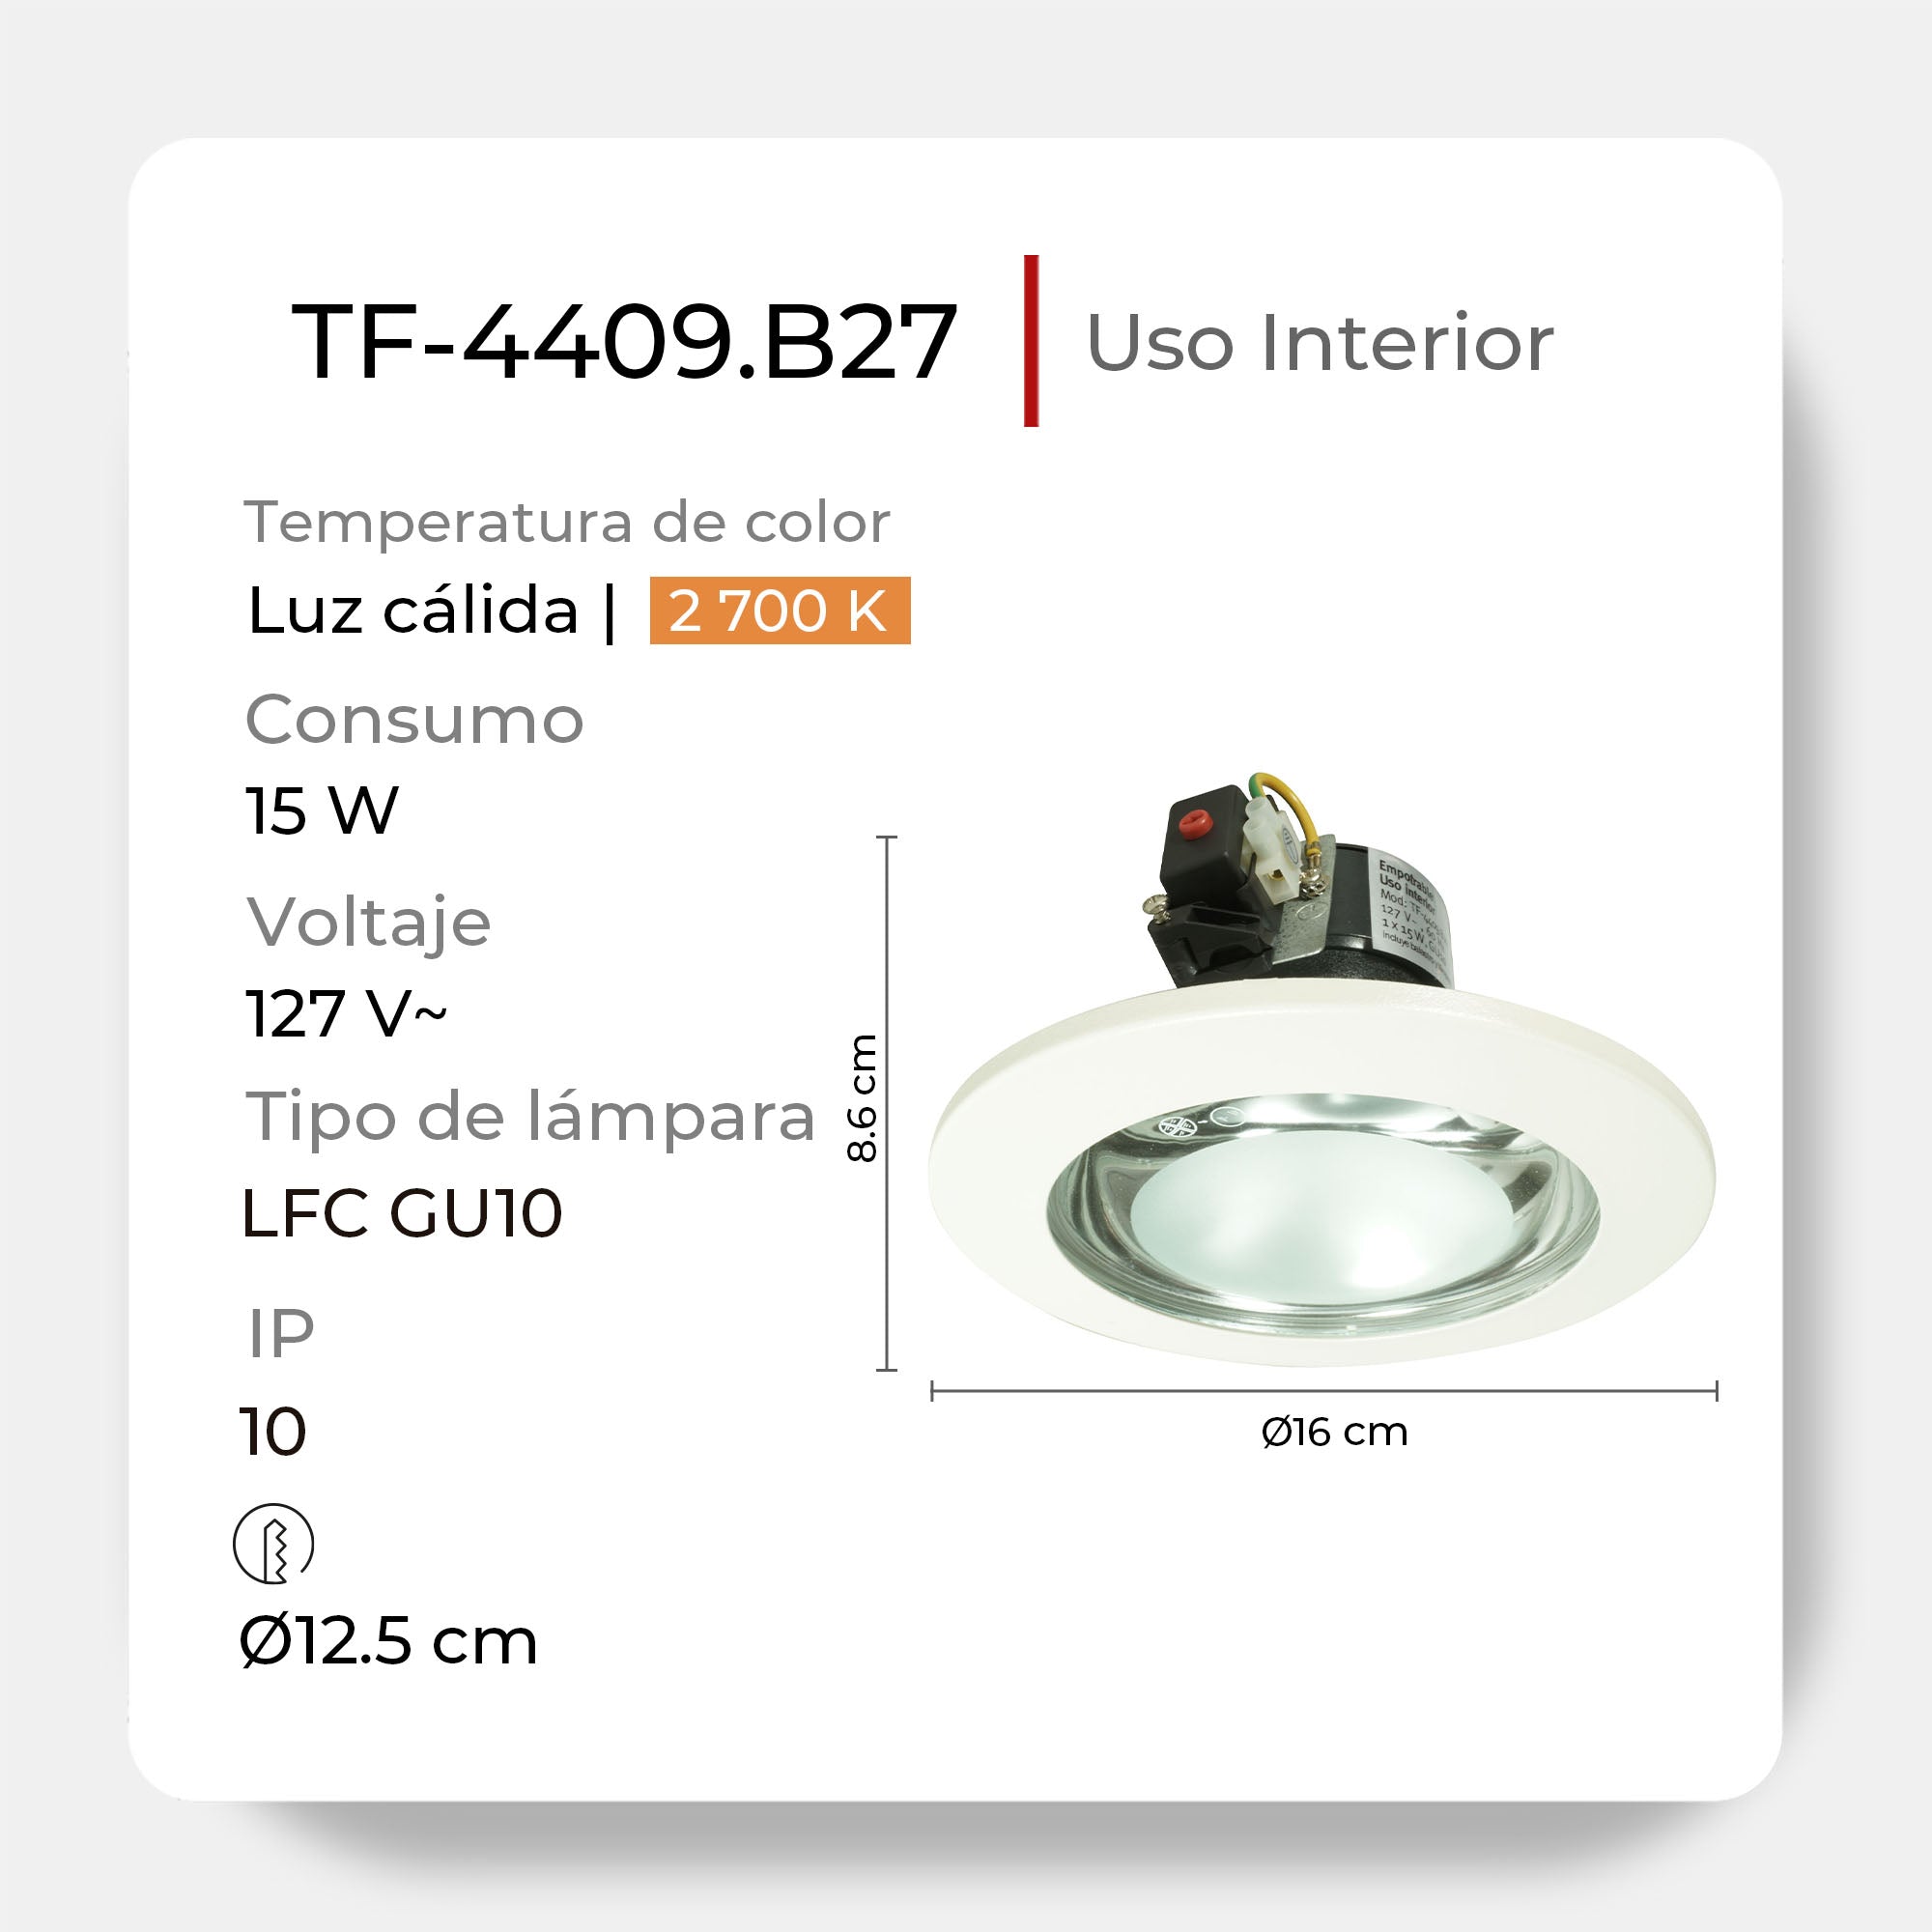 Luminario fluorescente para empotrar, TF-4409.B